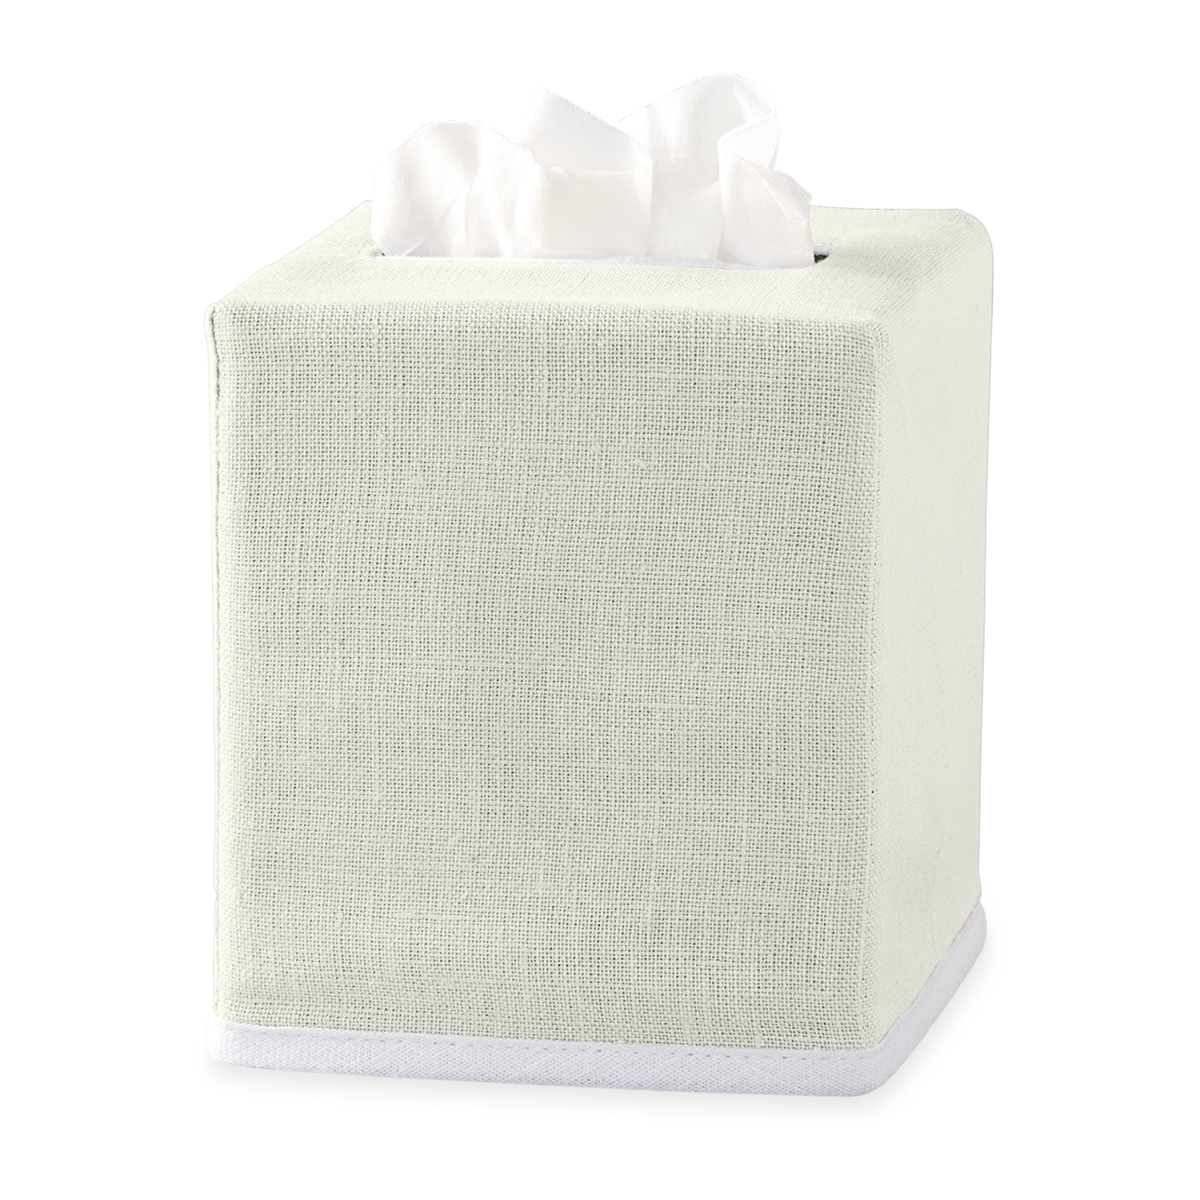 Ivory Matouk Chelsea Linen Tissue Box Cover Against White Background